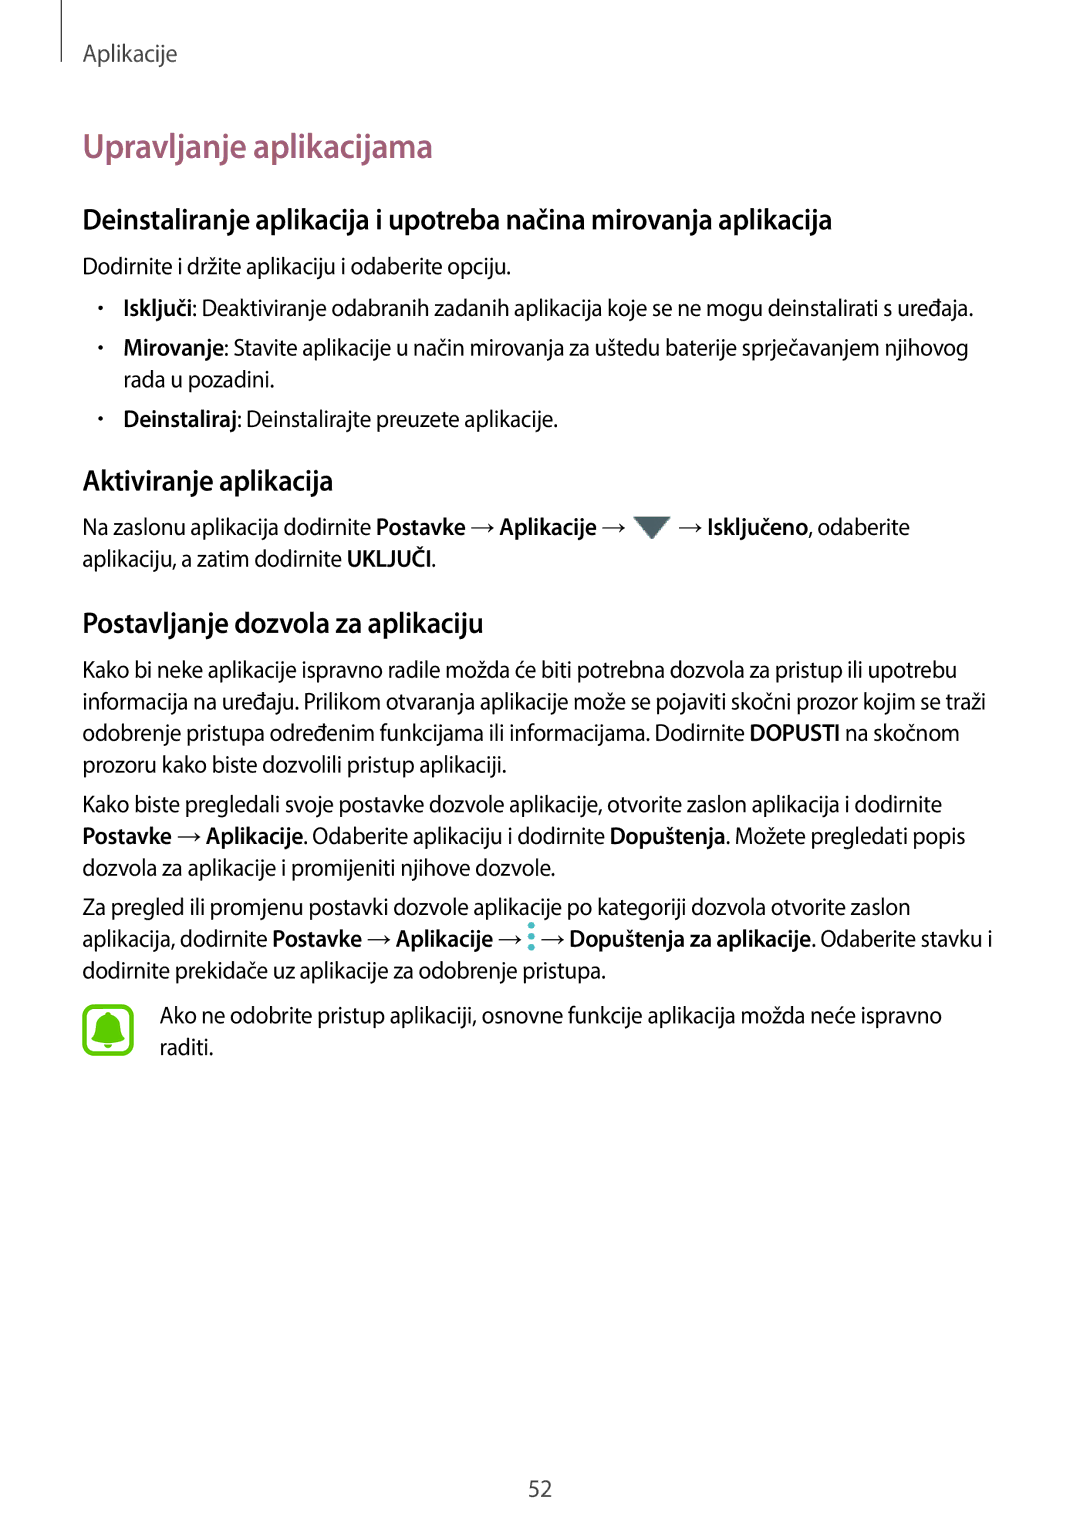 Samsung SM-J330FZKNDHR manual Upravljanje aplikacijama, Aktiviranje aplikacija, Postavljanje dozvola za aplikaciju 